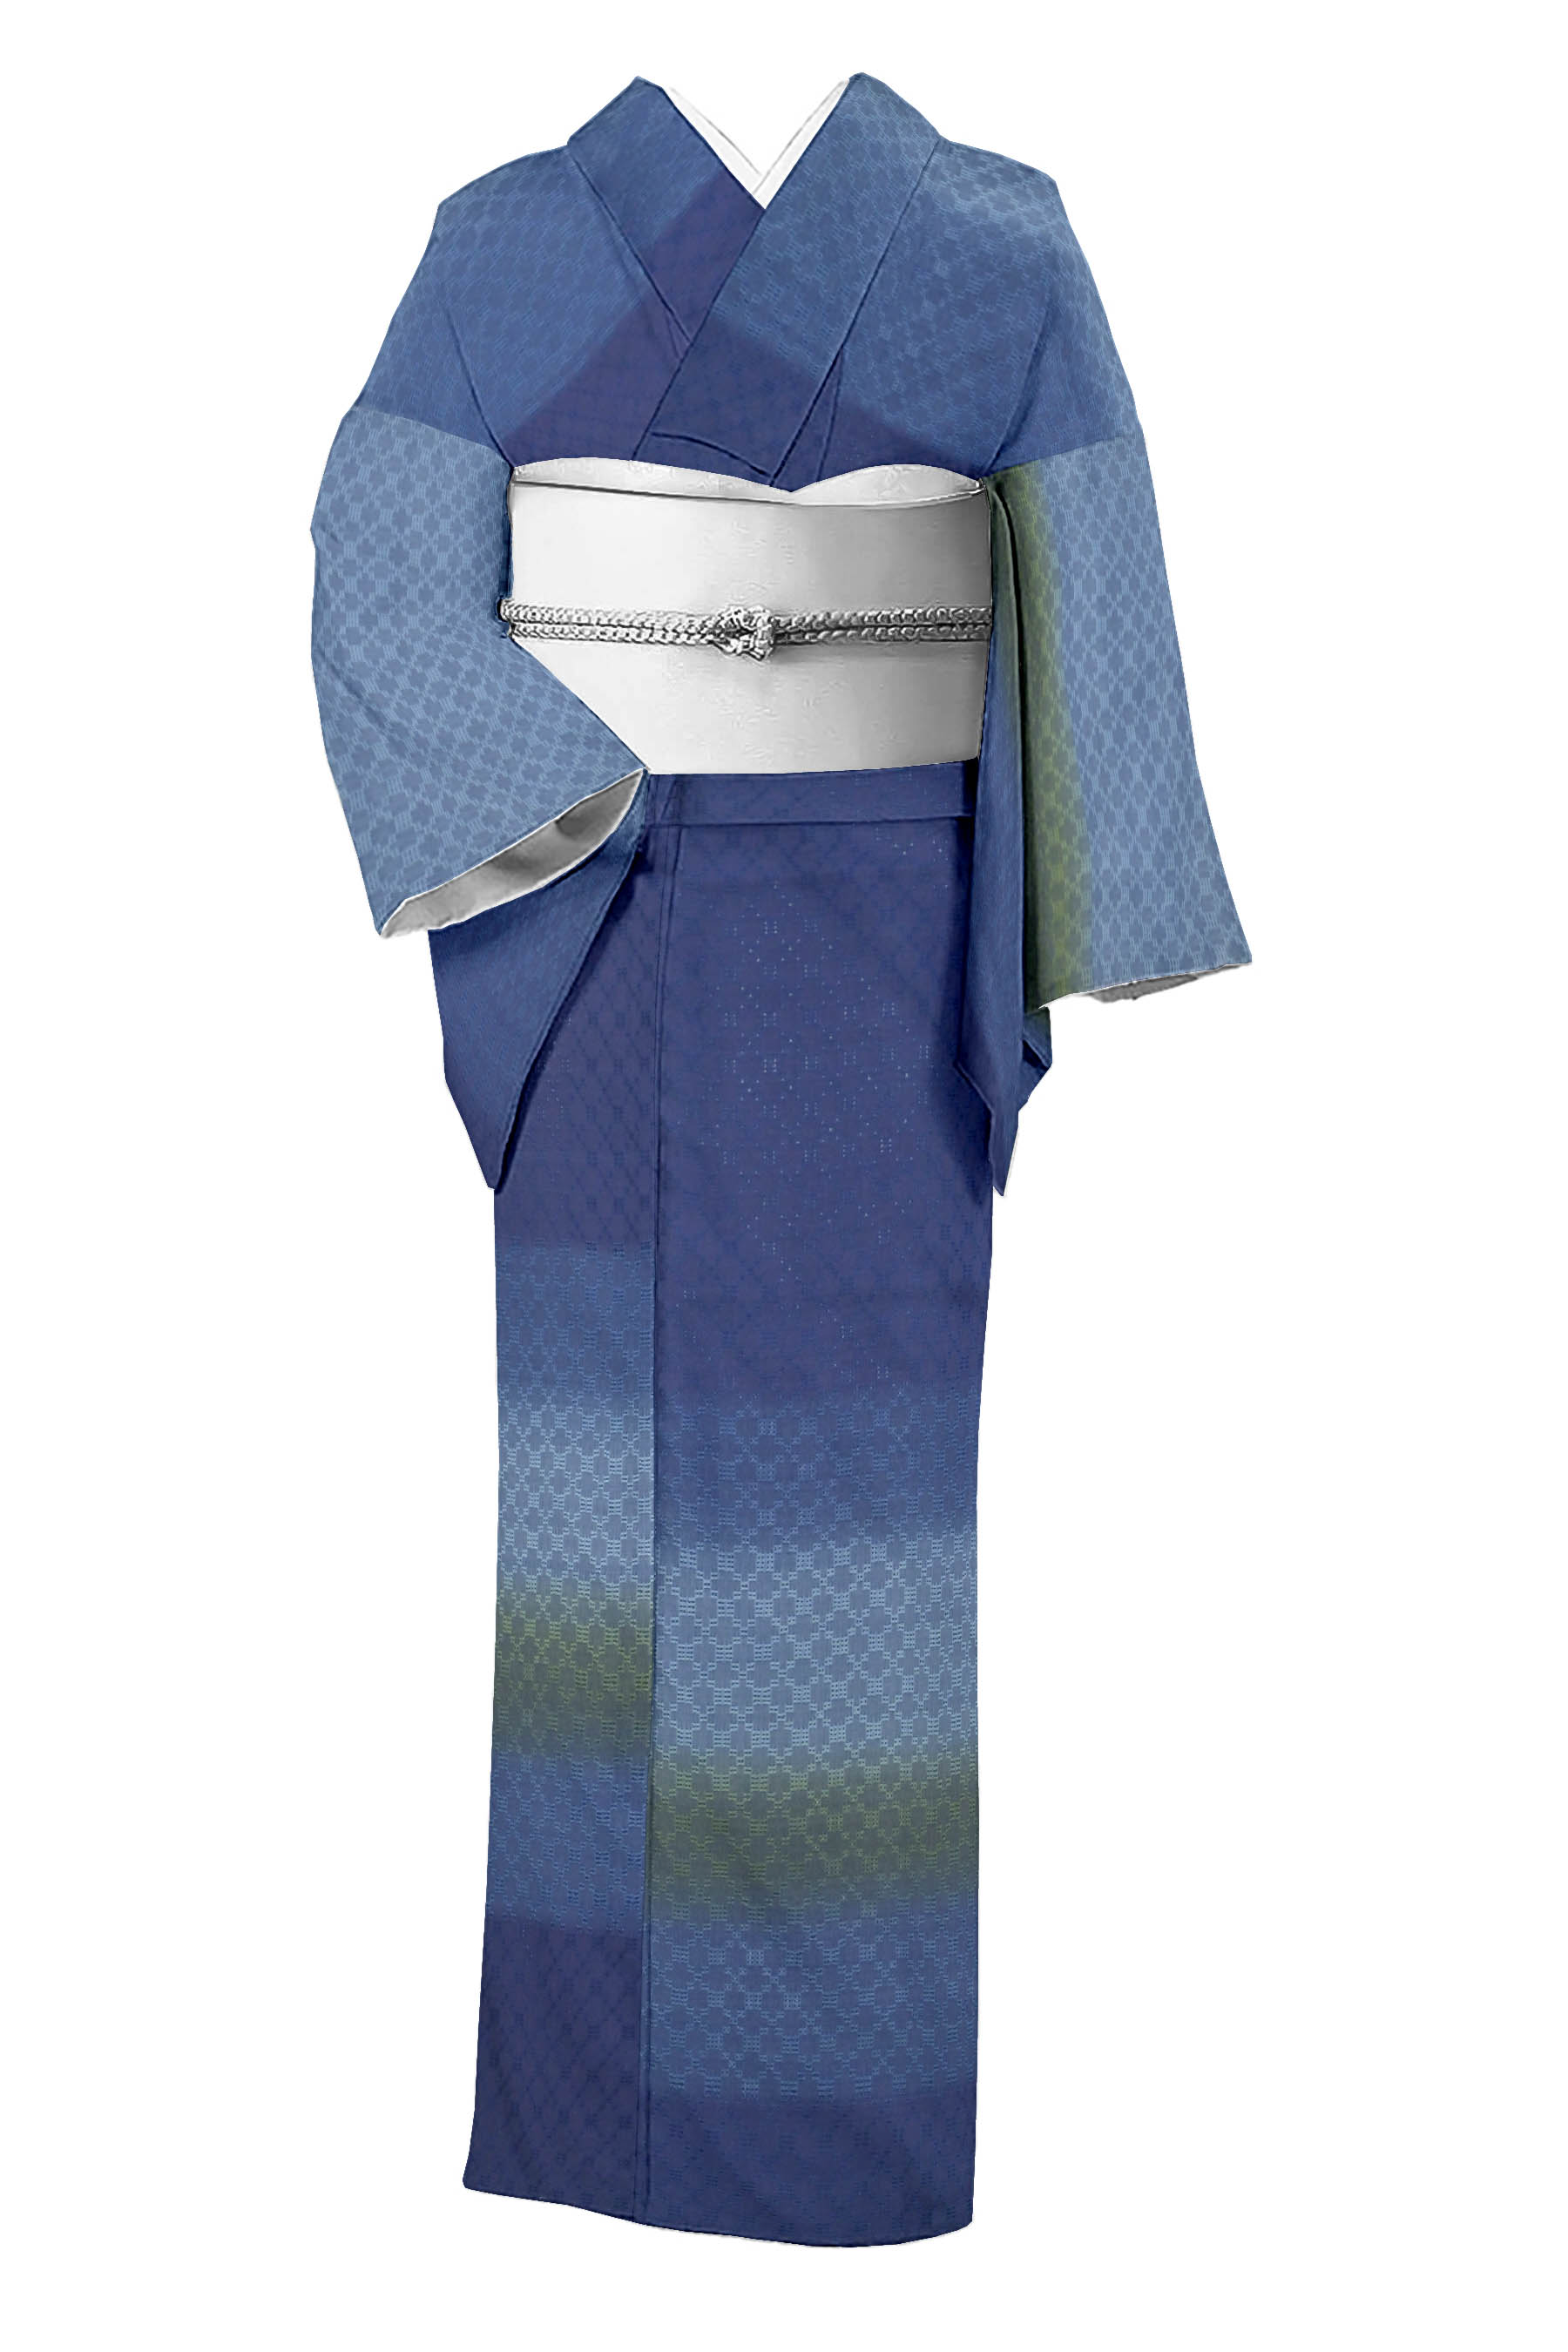 シックな紺色 亀甲織り 正絹大島紬 | www.gamutgallerympls.com